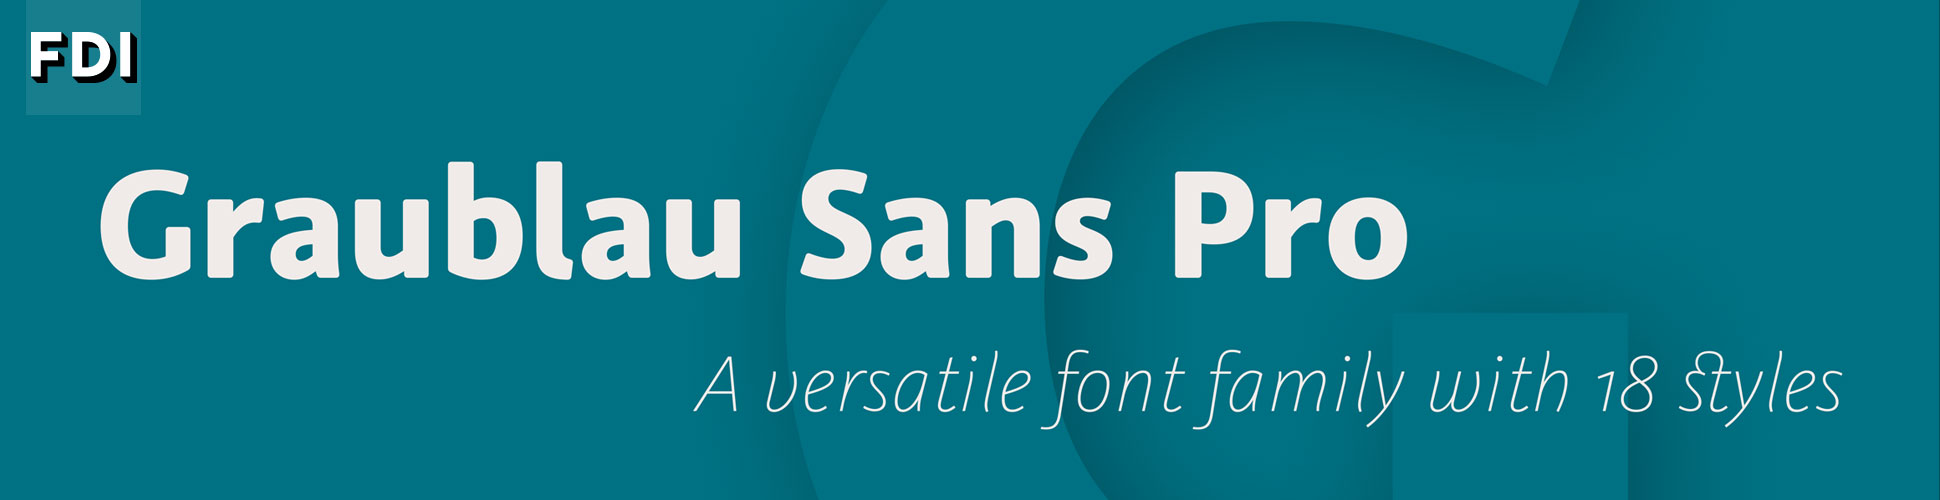 Graublau Sans Pro: A versatile font family with 18 styles